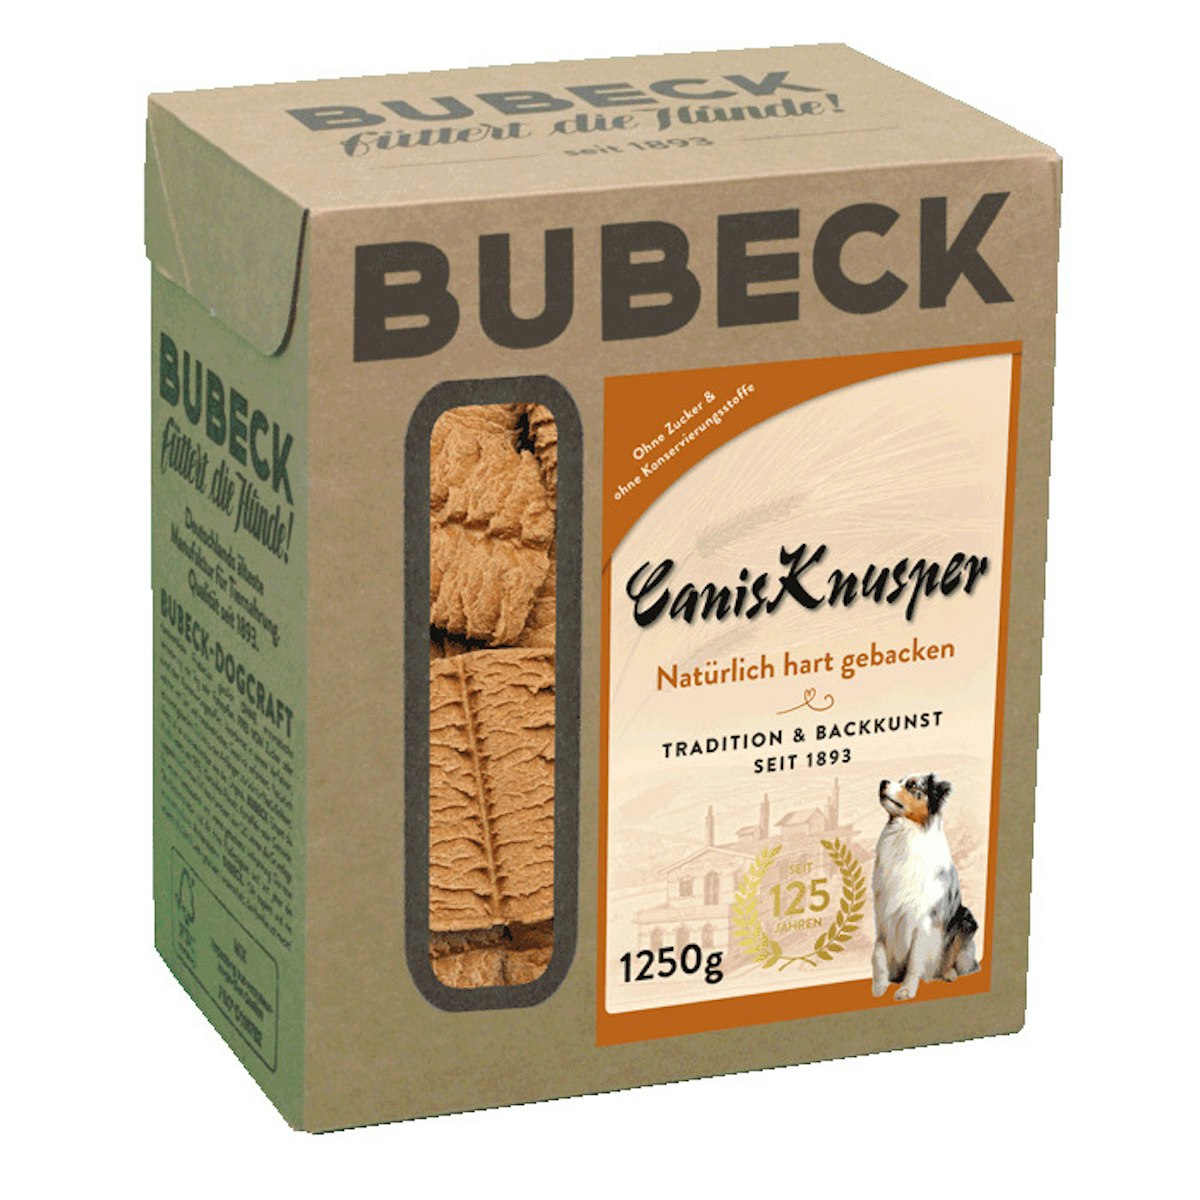 Bubeck Canis Knusper Hundesnack von Bubeck